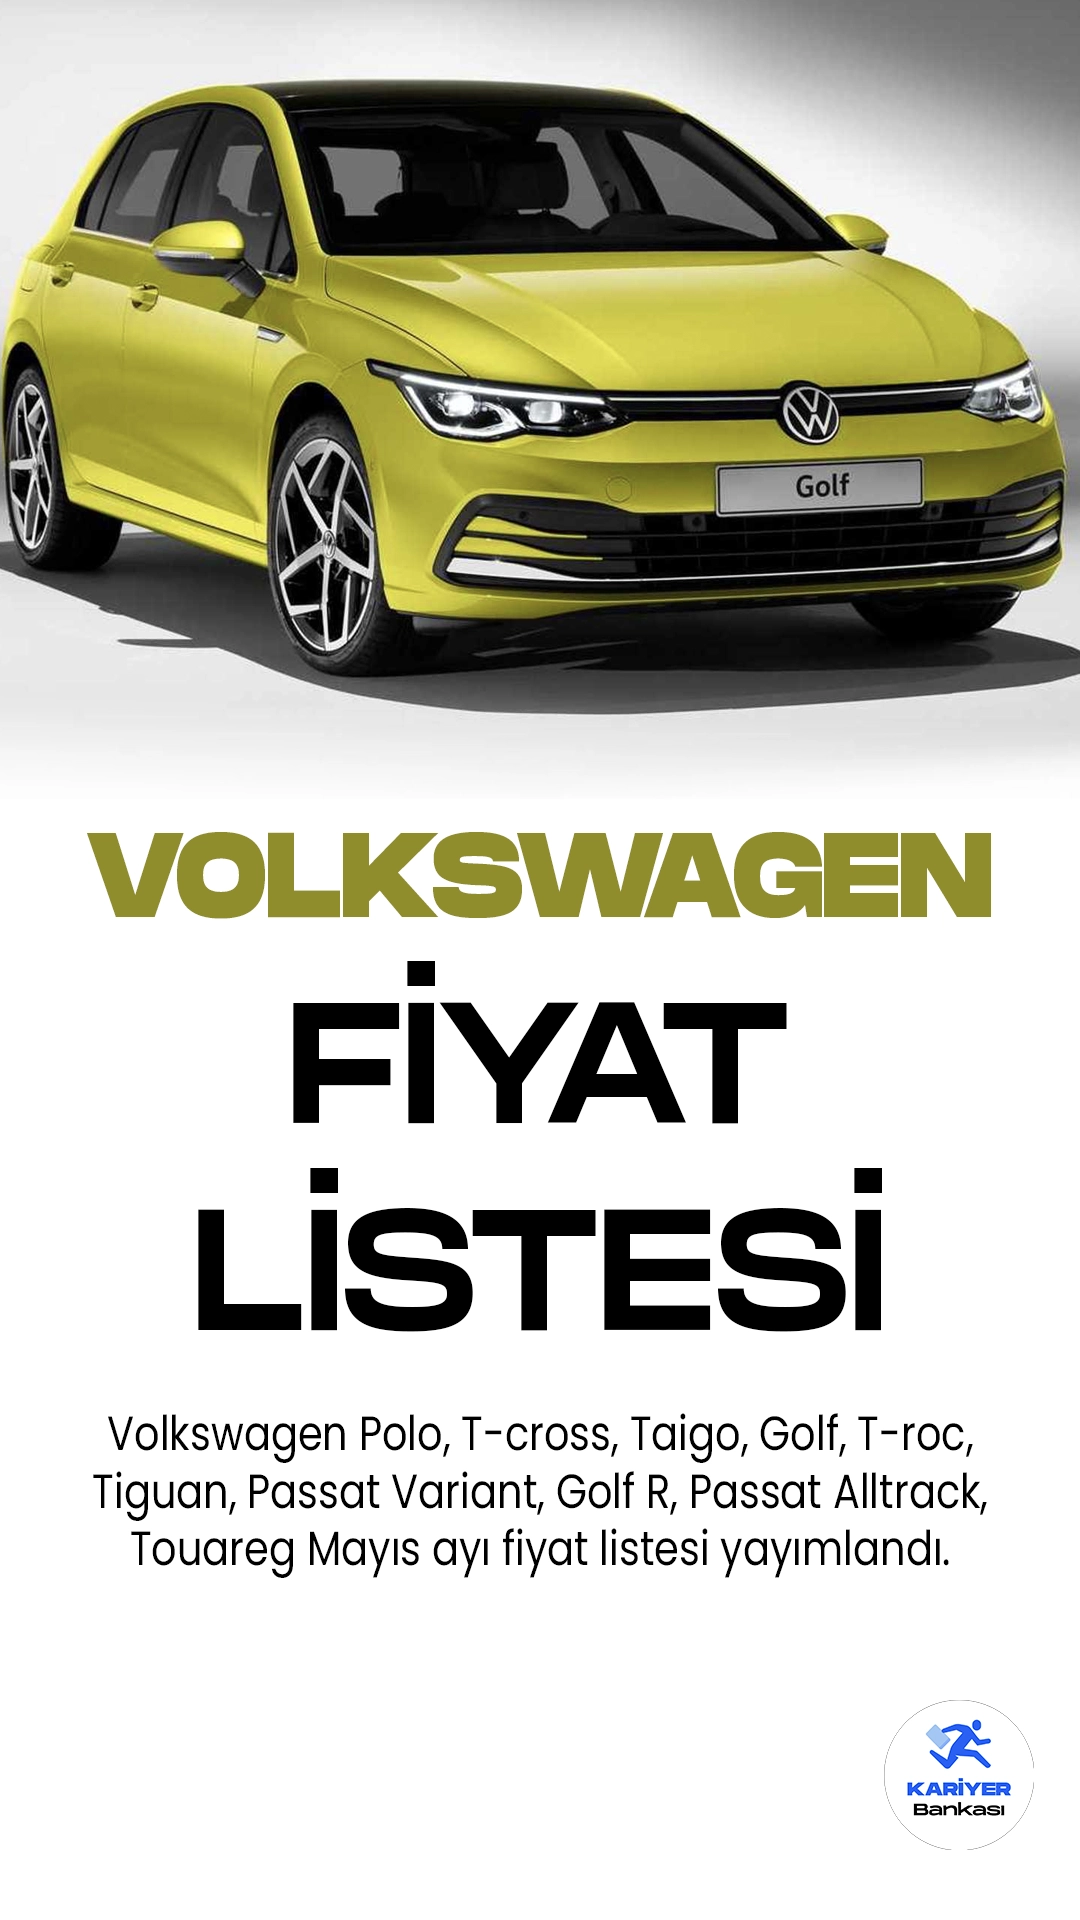 Volkswagen Mayıs 2023 Fiyat Listesi Yayımlandı! Ünlü Alman araç markası Volkswagen, her ay fiyat listesini güncellemeye devam ediyor. Türkiye'de oldukça popüler olan ve sevilen markalar arasında yer alan Volkswagen, modern tasarımı ve konforlu sürüş sağlaması nedeniyle birçok sürücünün favori modelleri arasında yer alıyor.